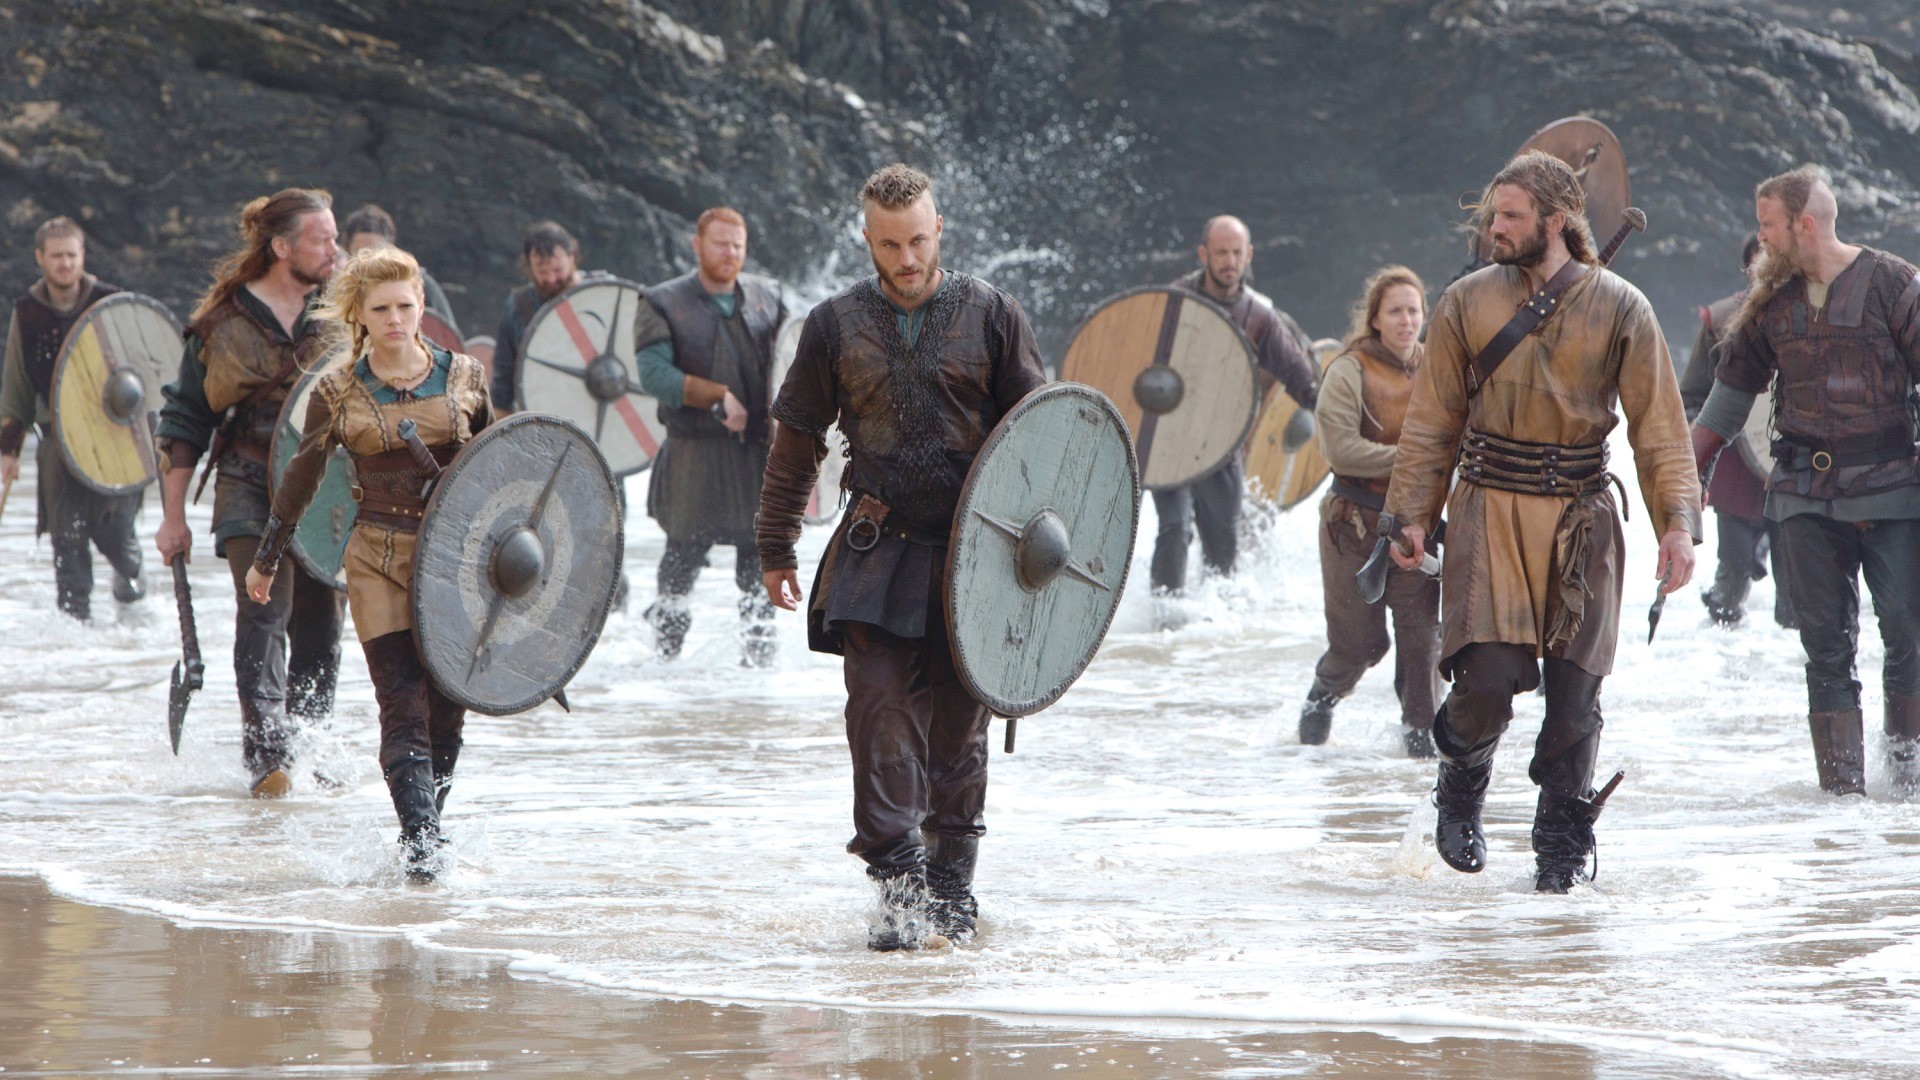 Vikings: Kattegat realmente existe? Conheça o local visto na série